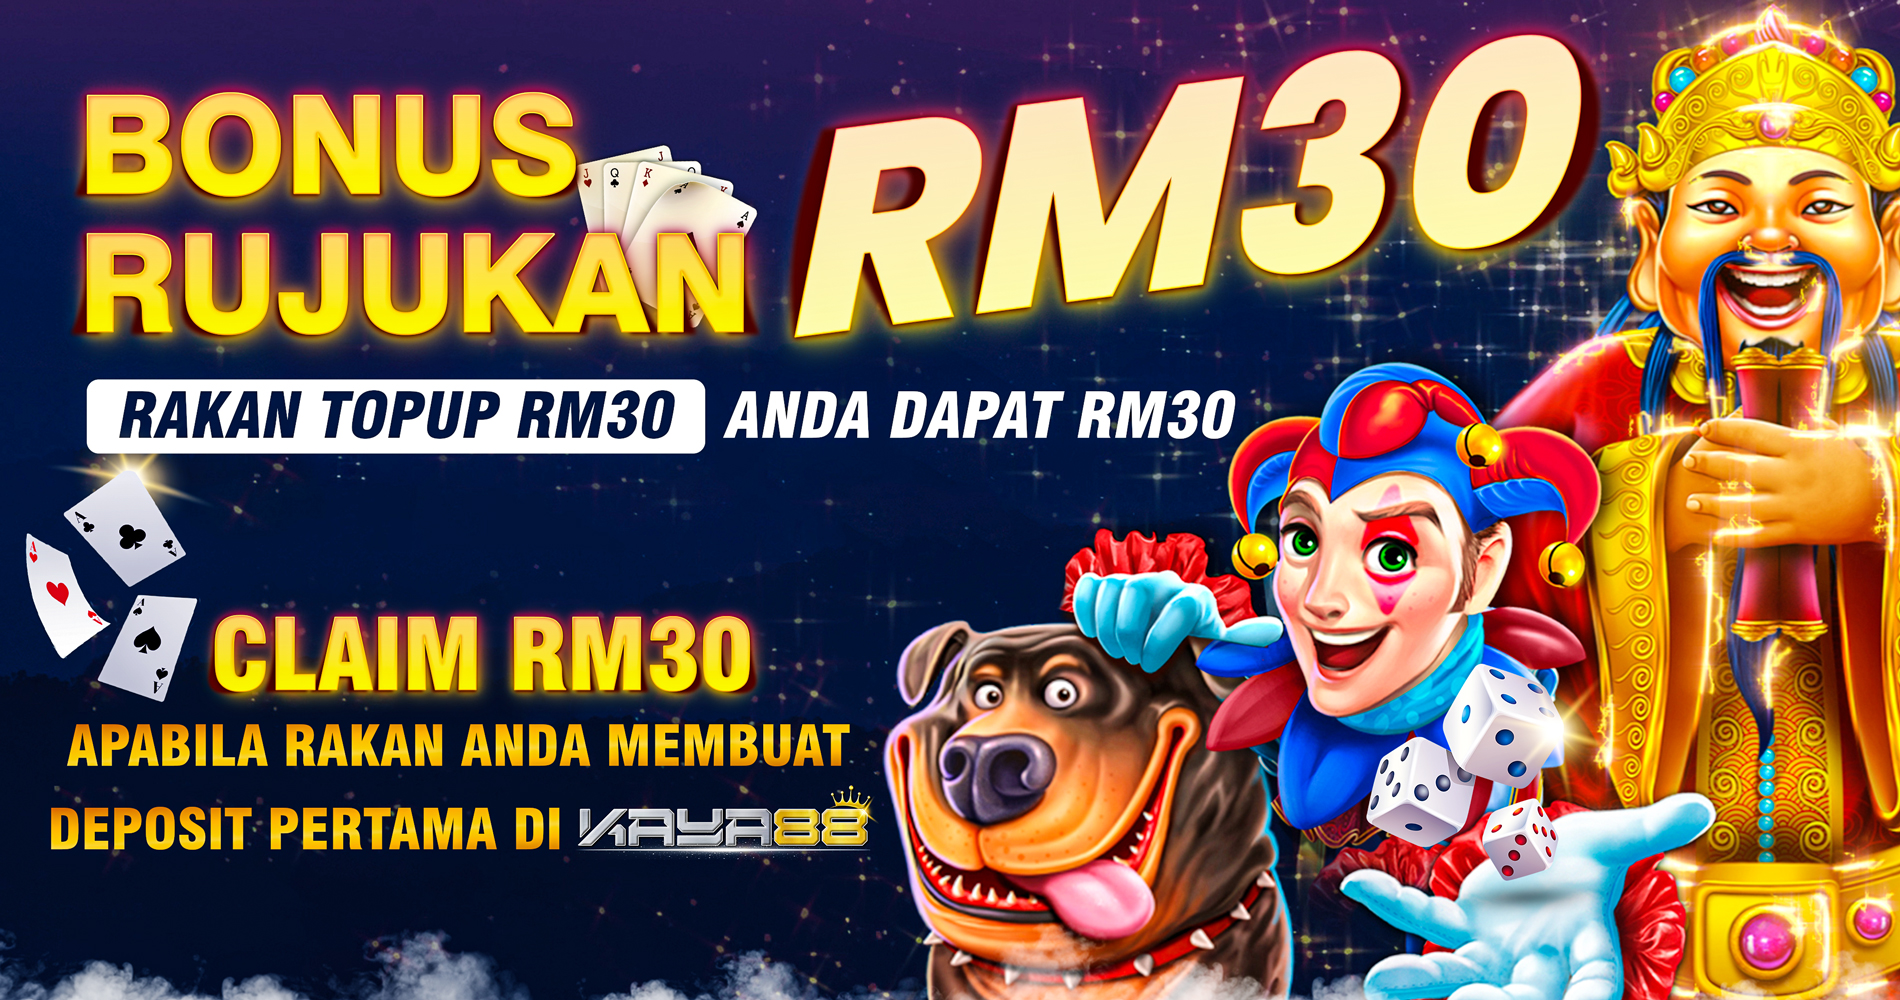 Bonus Rujukan RM30